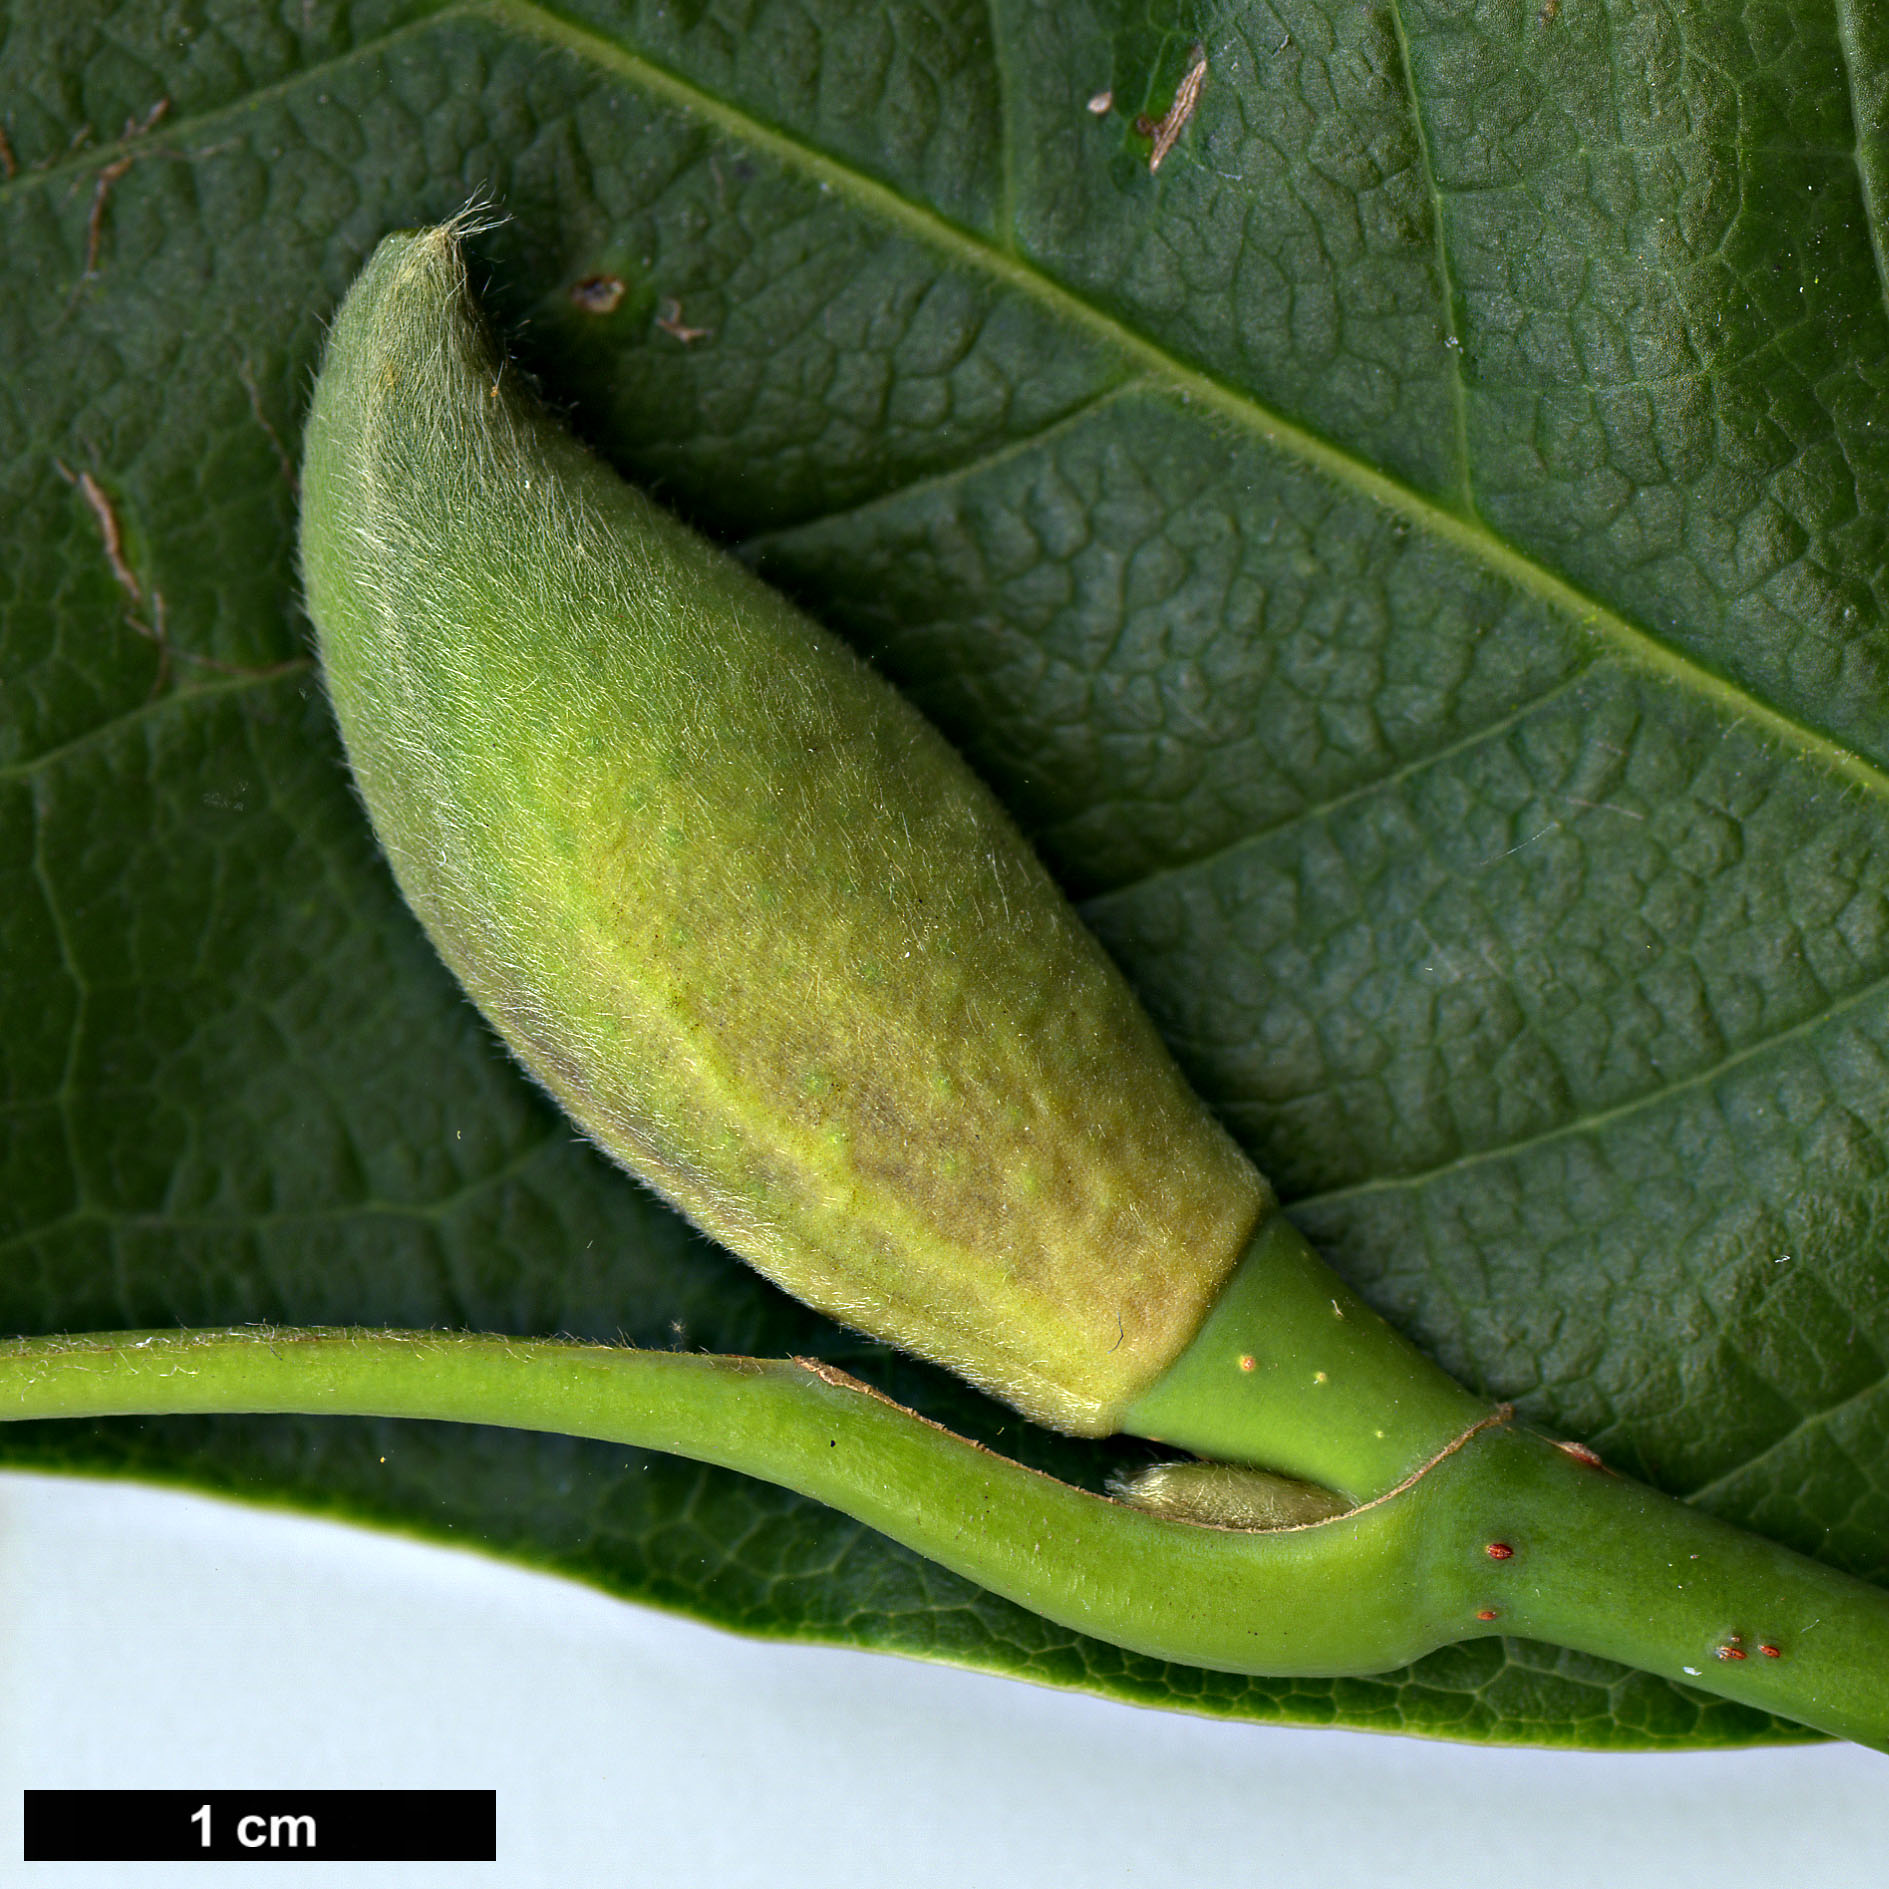 High resolution image: Family: Magnoliaceae - Genus: Magnolia - Taxon: sprengeri - SpeciesSub: var. sprengeri